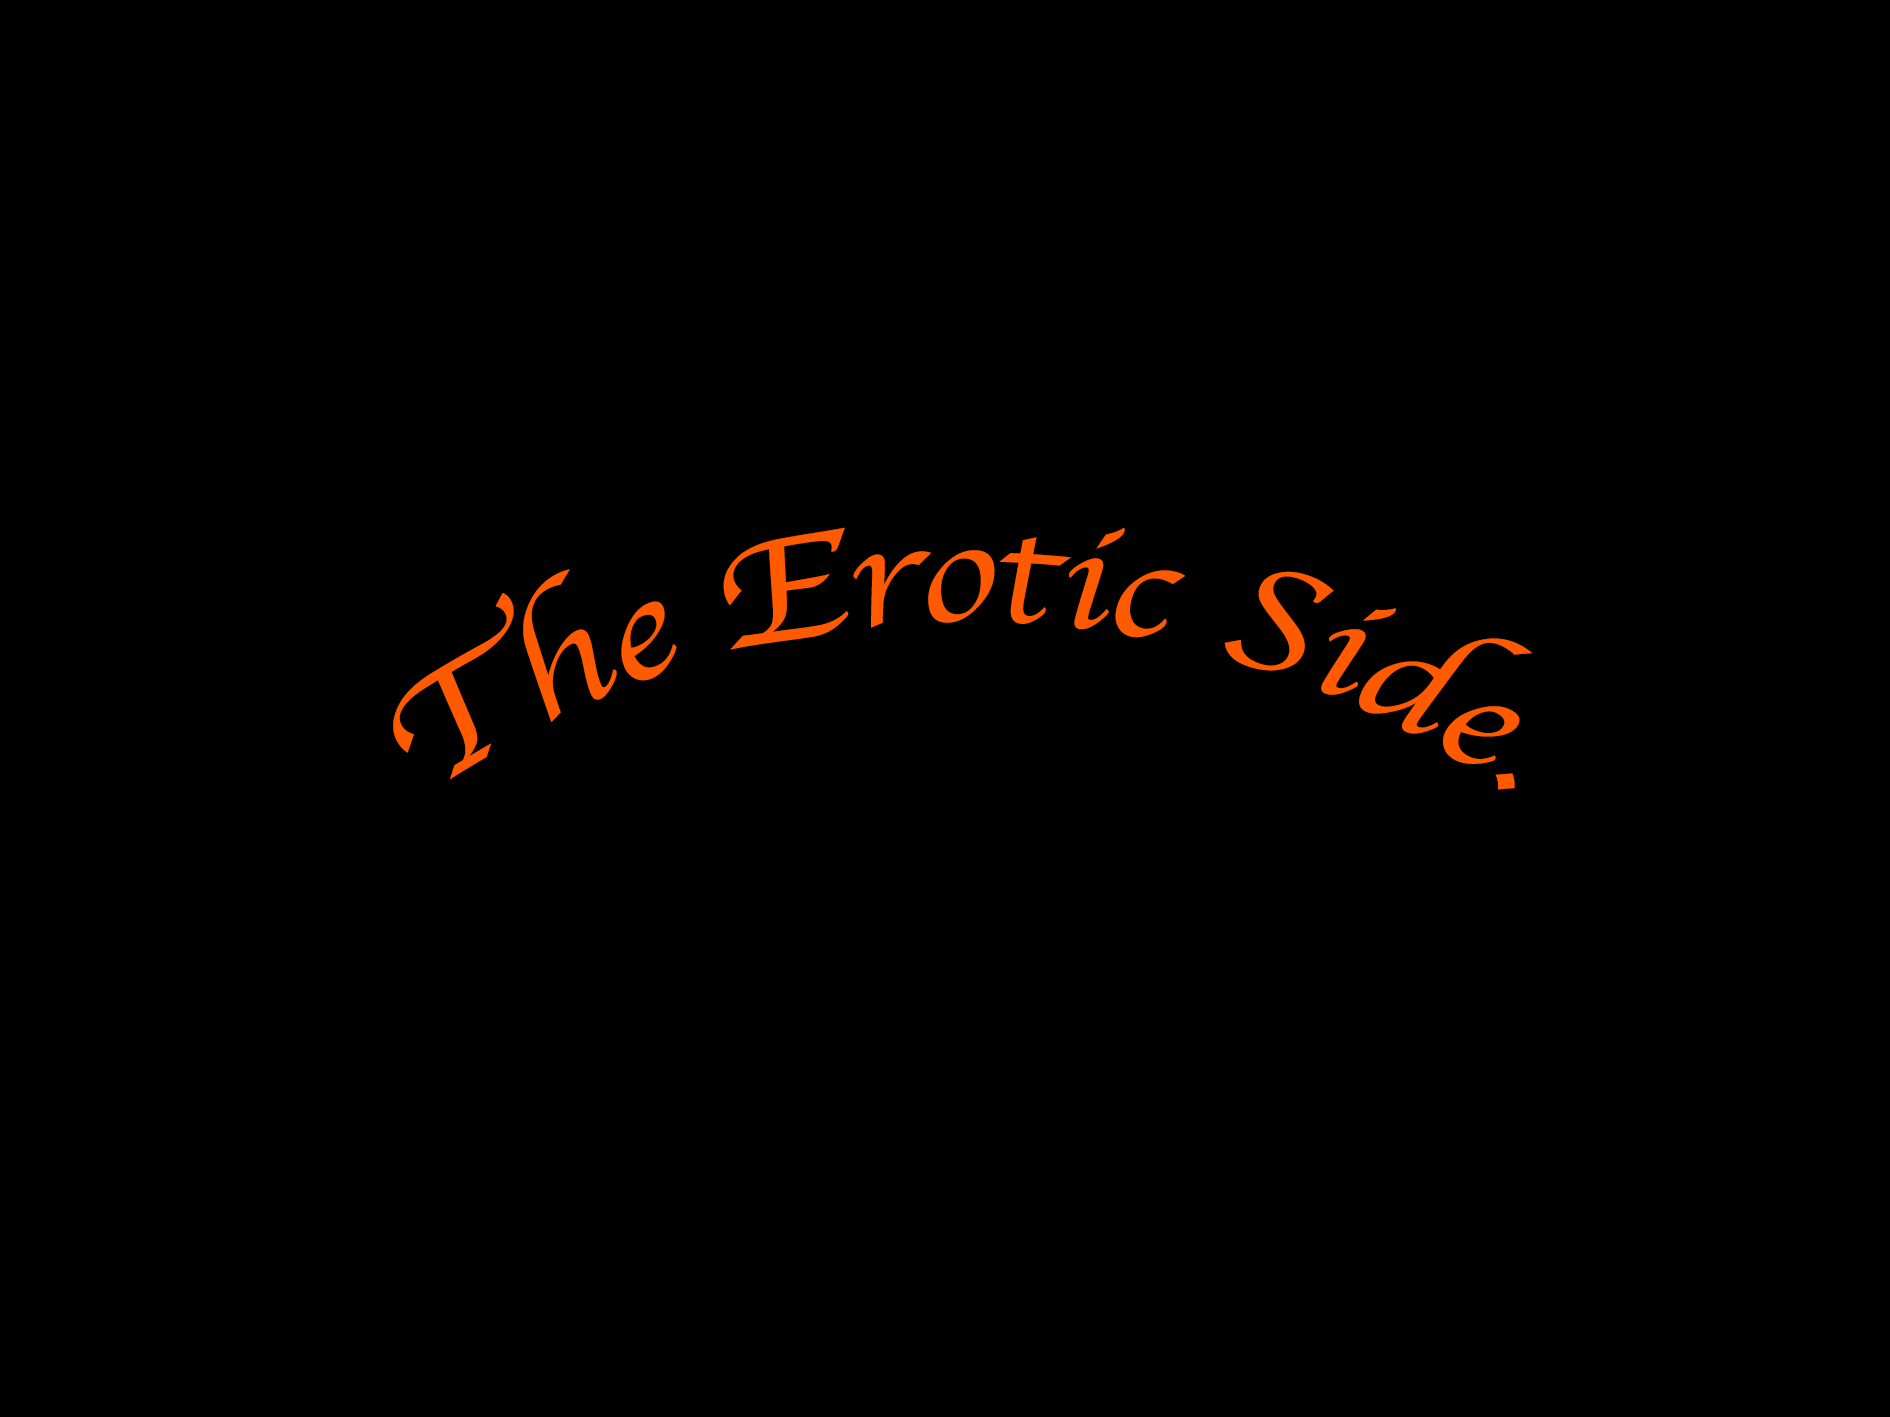 The Erotic Ones